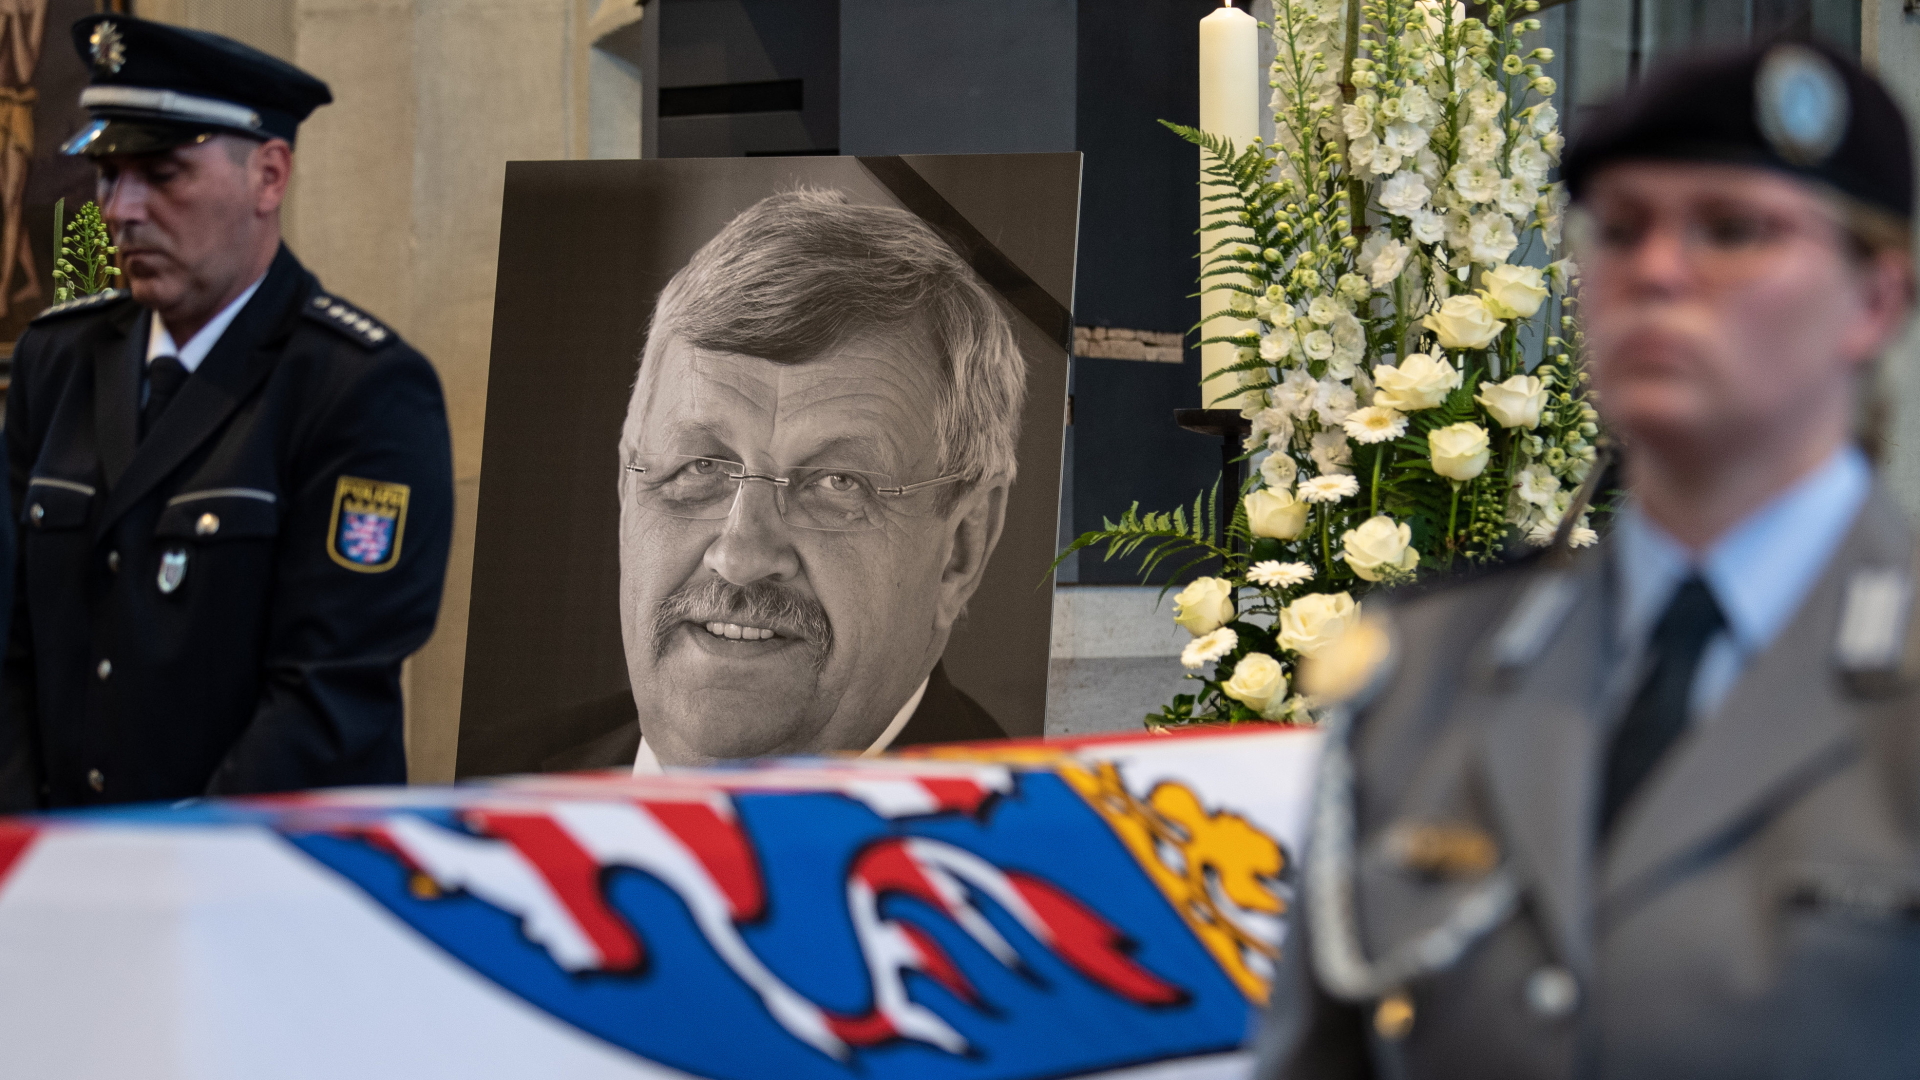 Ein Foto des ermordeten Kasseler Regierungspräsidenten Lübcke bei der Trauerfeier im Juni 2019. | dpa